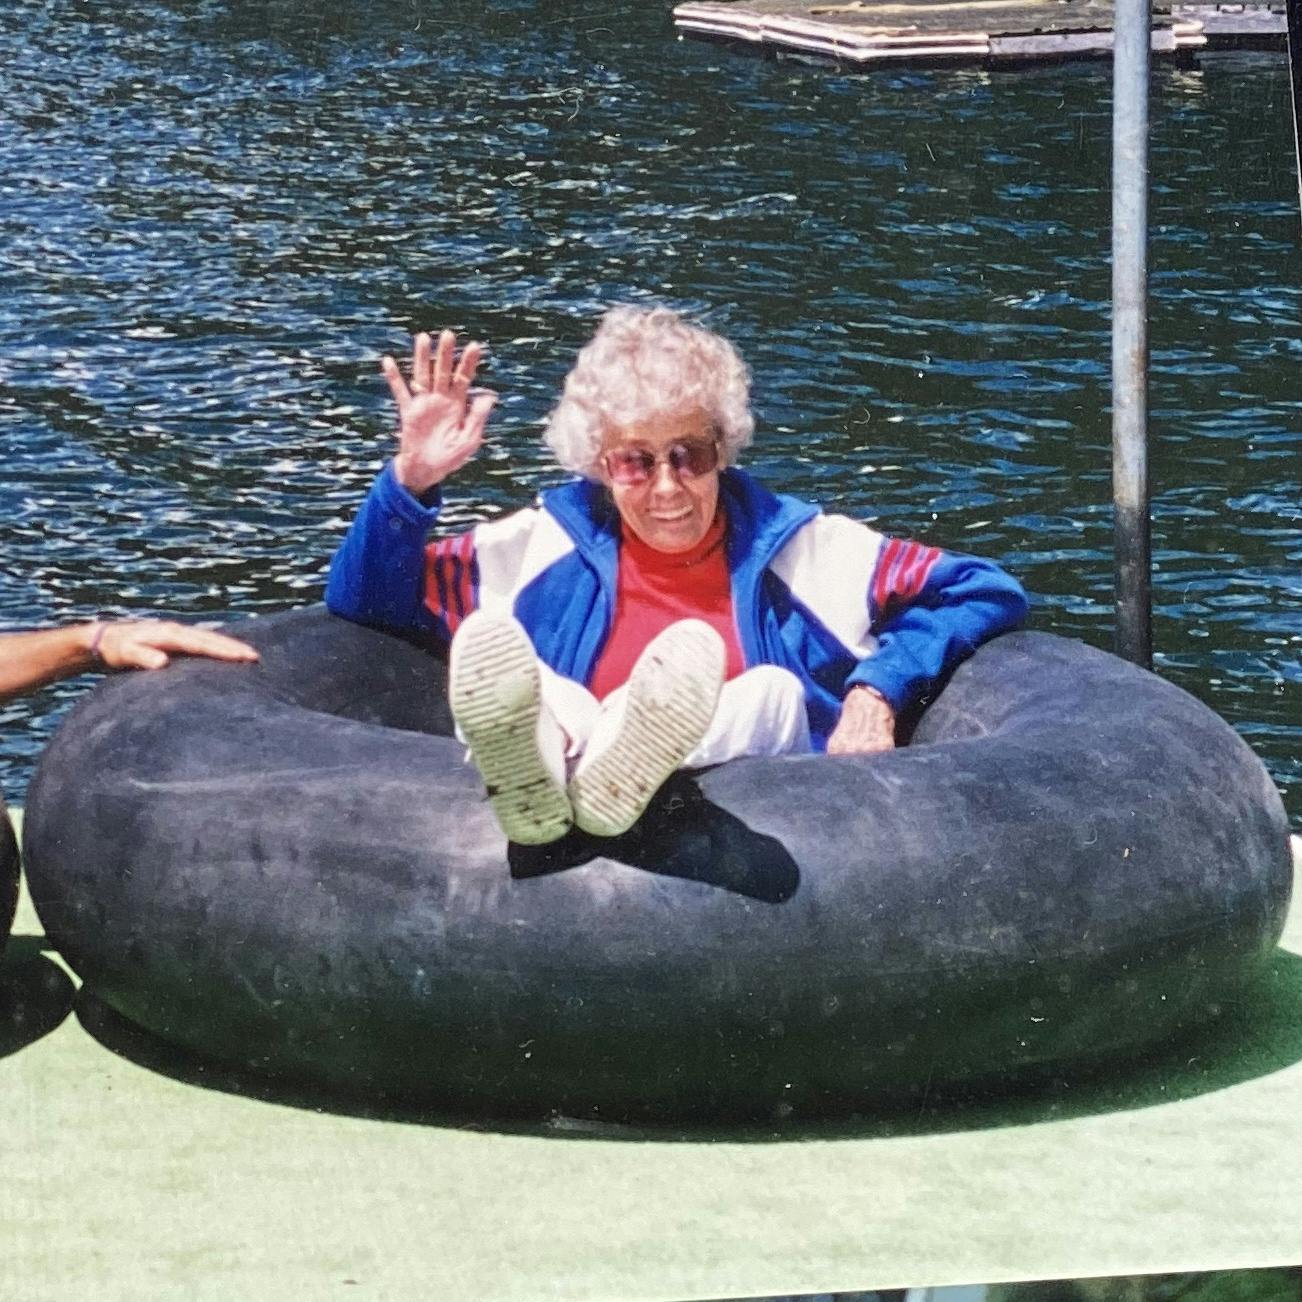 Grandma Flossie, kicking it in an inner tube